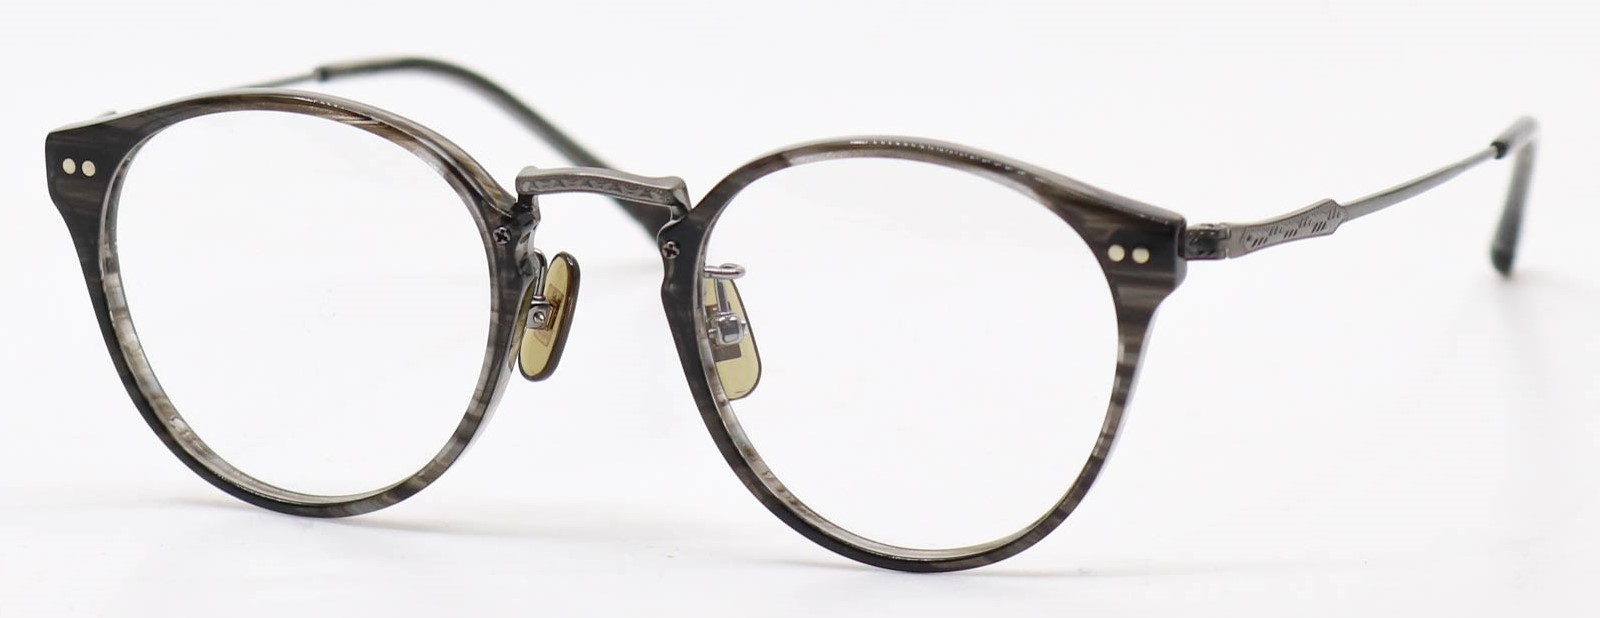 眼鏡のカラータイプC-4 Gray-Sasa/Gray-Matt